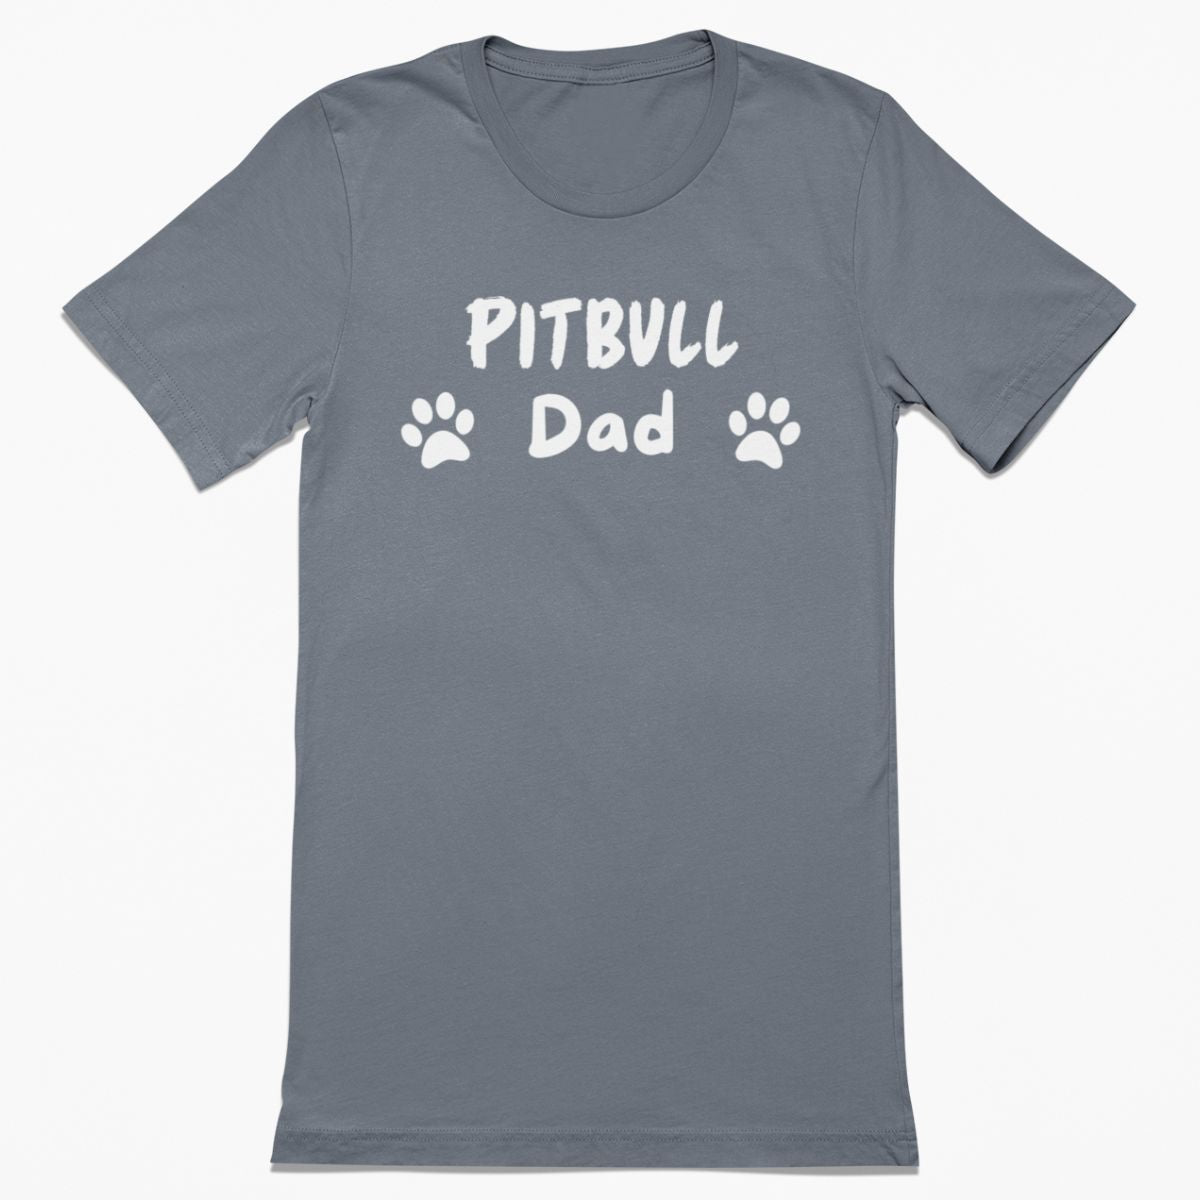 Pitbull Dad Shirt